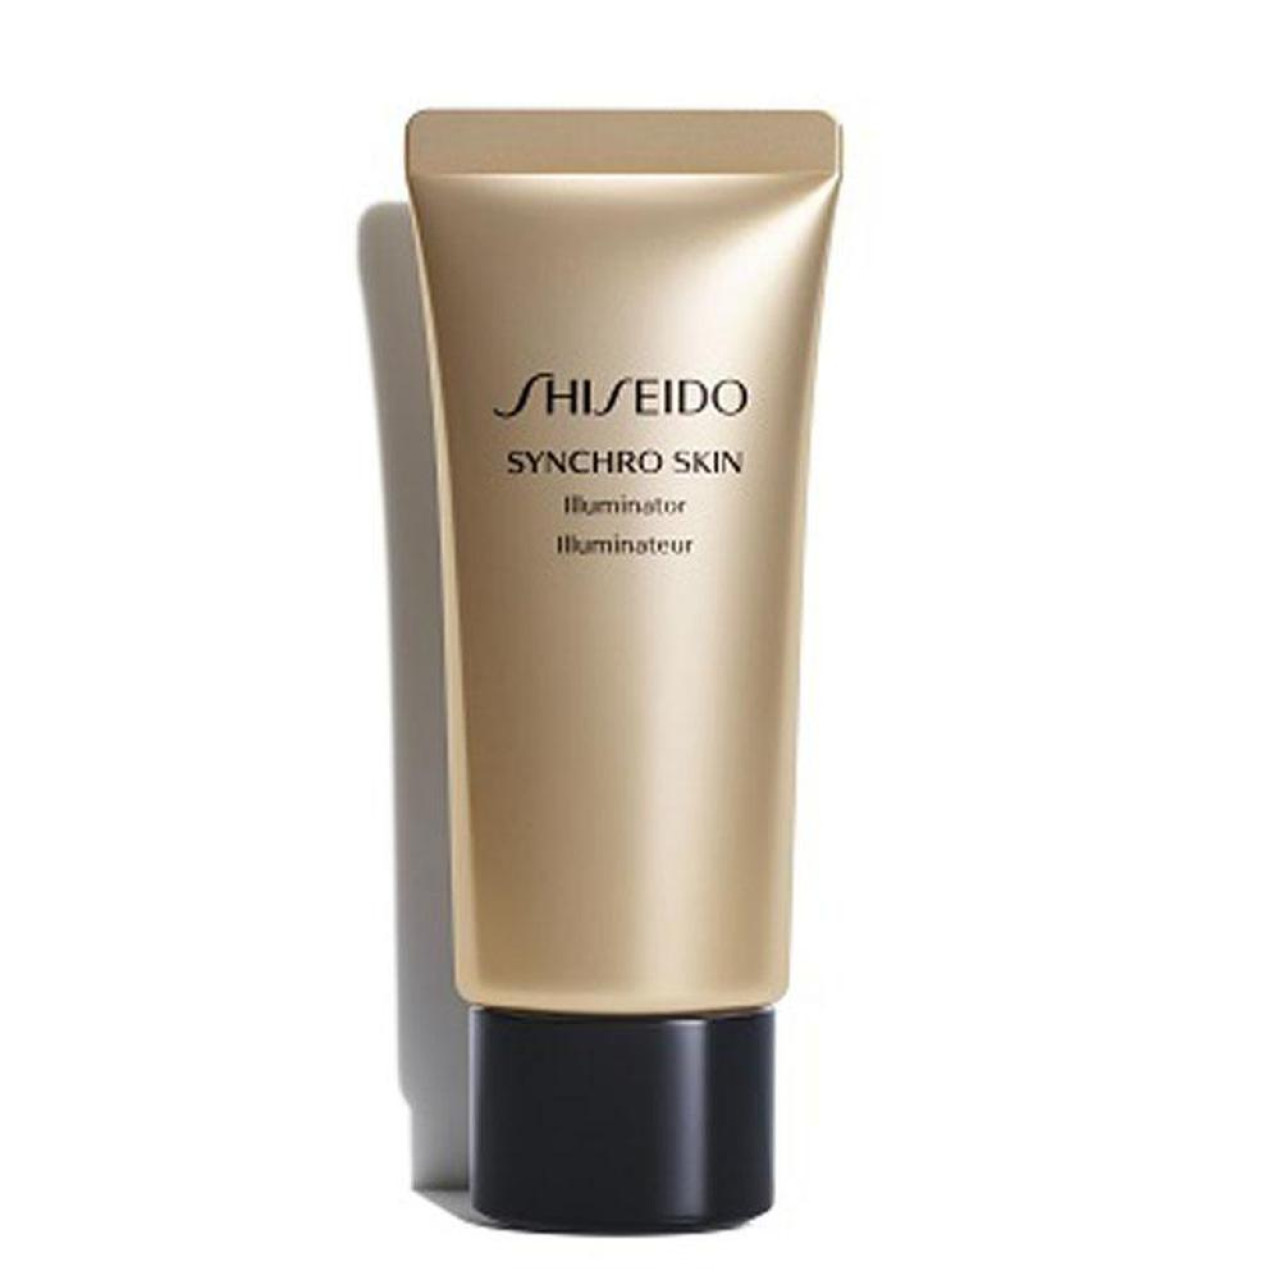 Shiseido synchro skin highlighter